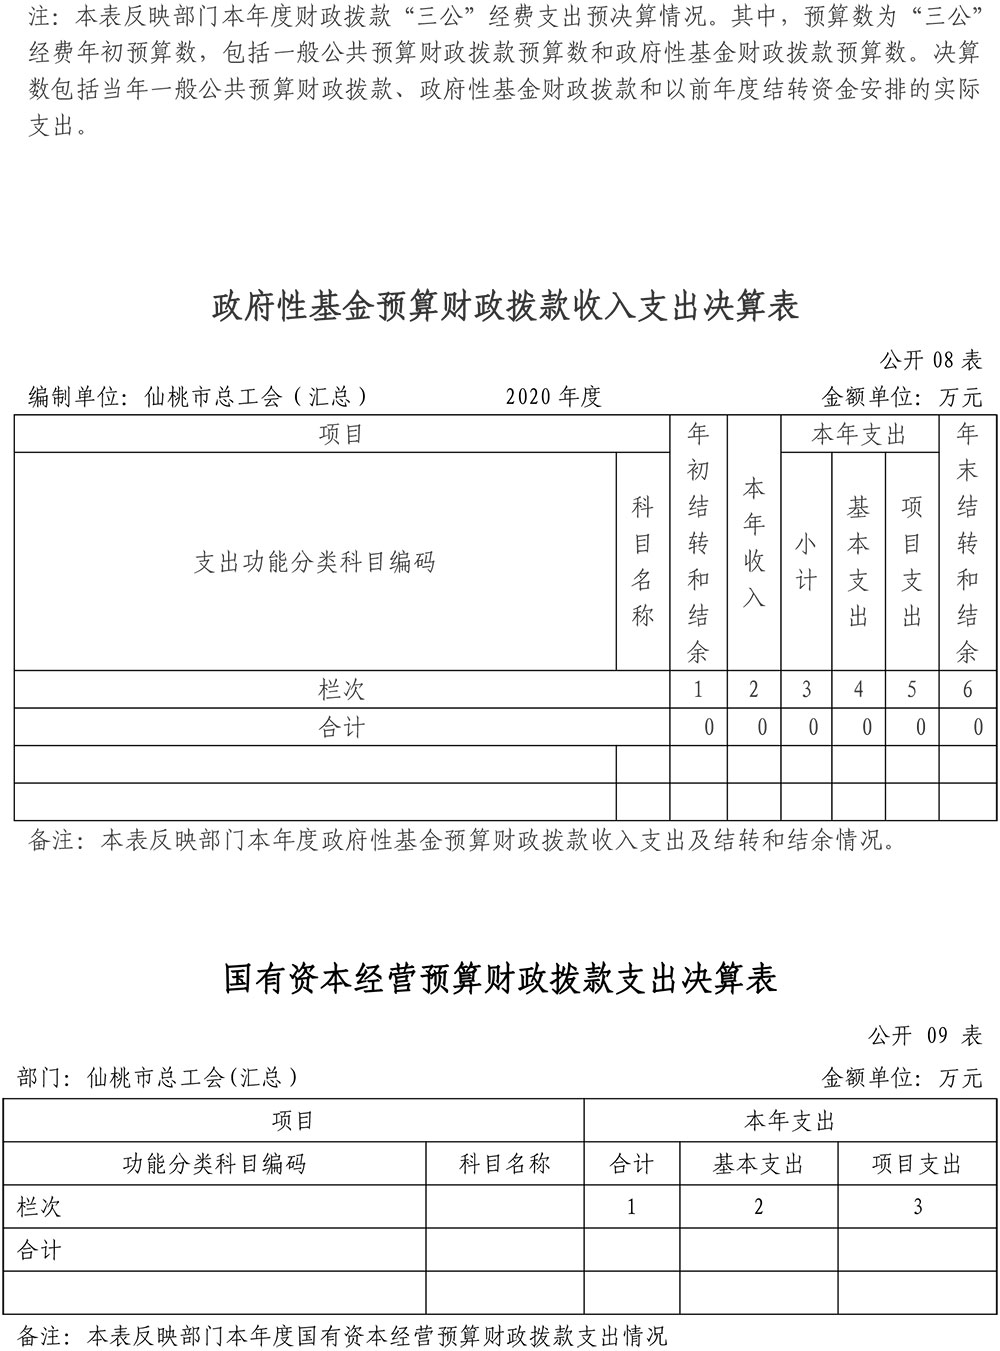 仙桃市总工会2020年部门决算信息公开